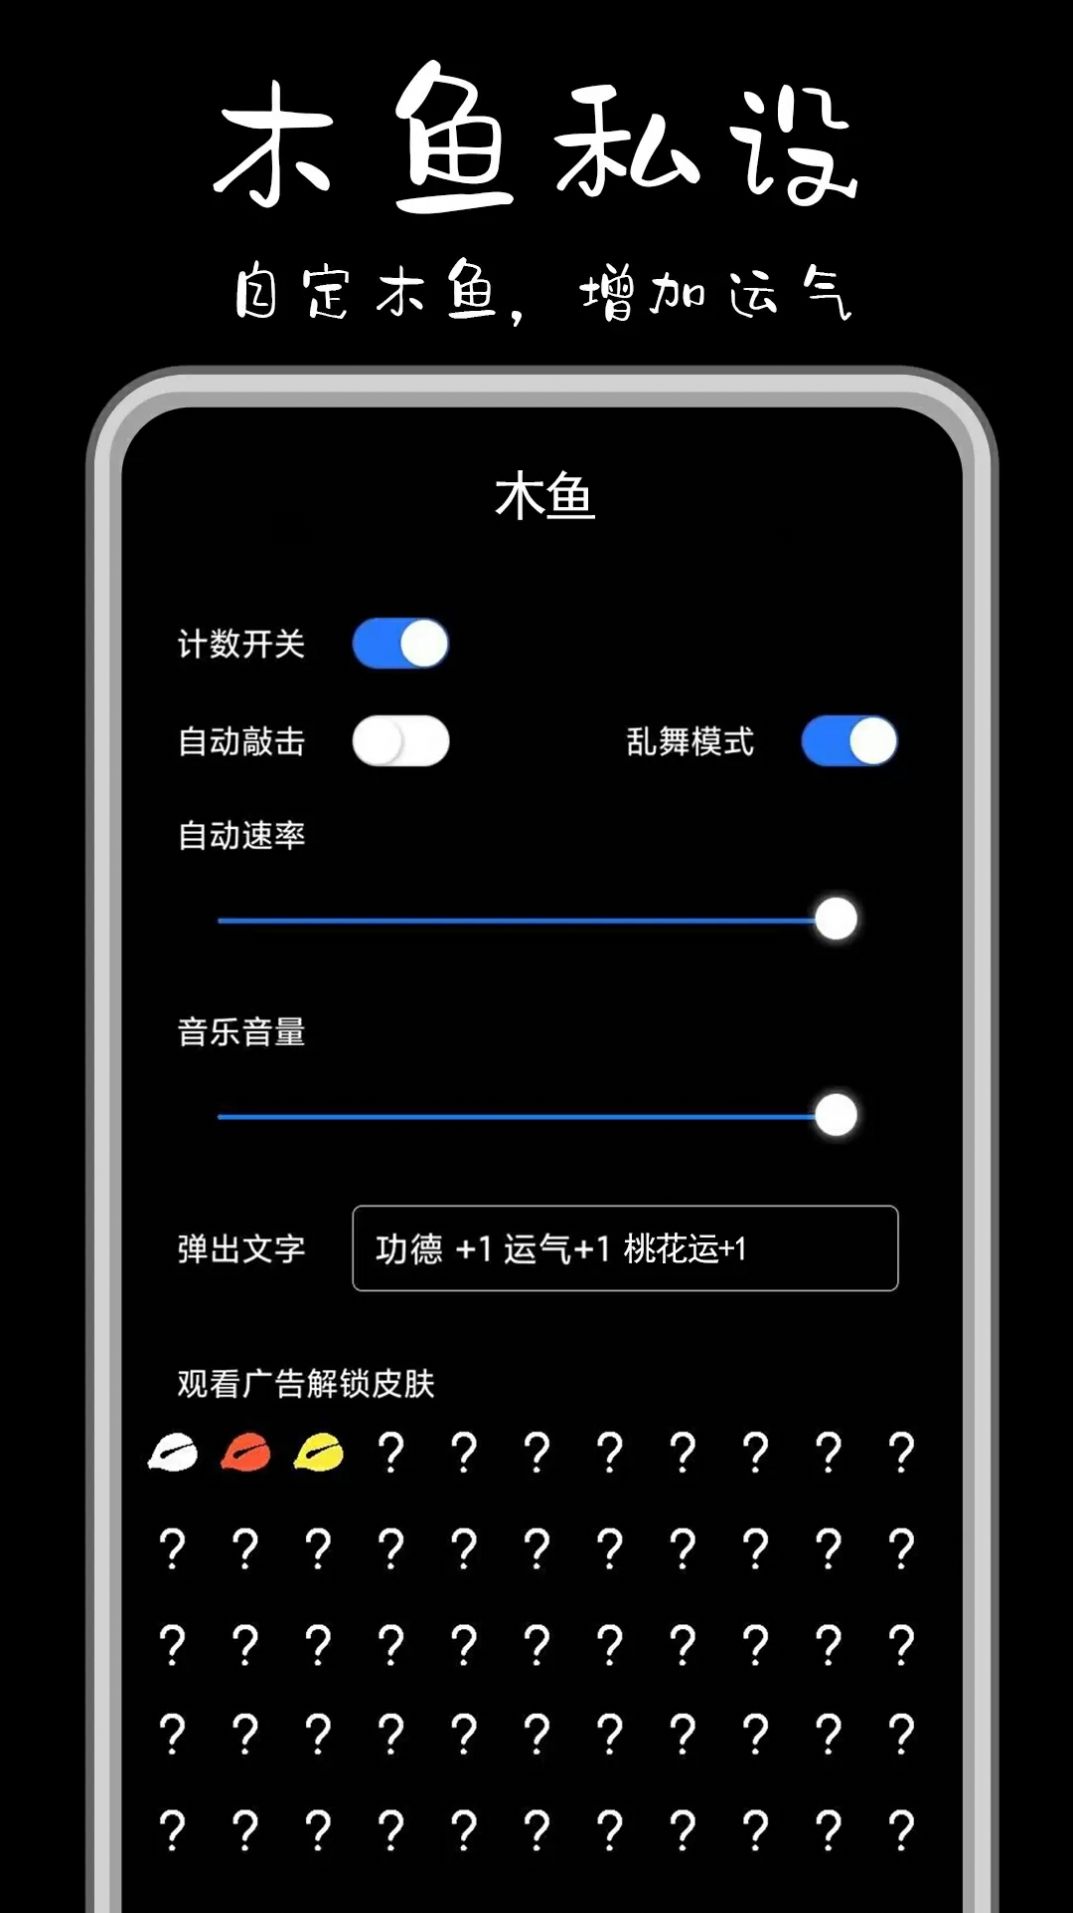 功德解忧木鱼安卓app下载官方版图片1